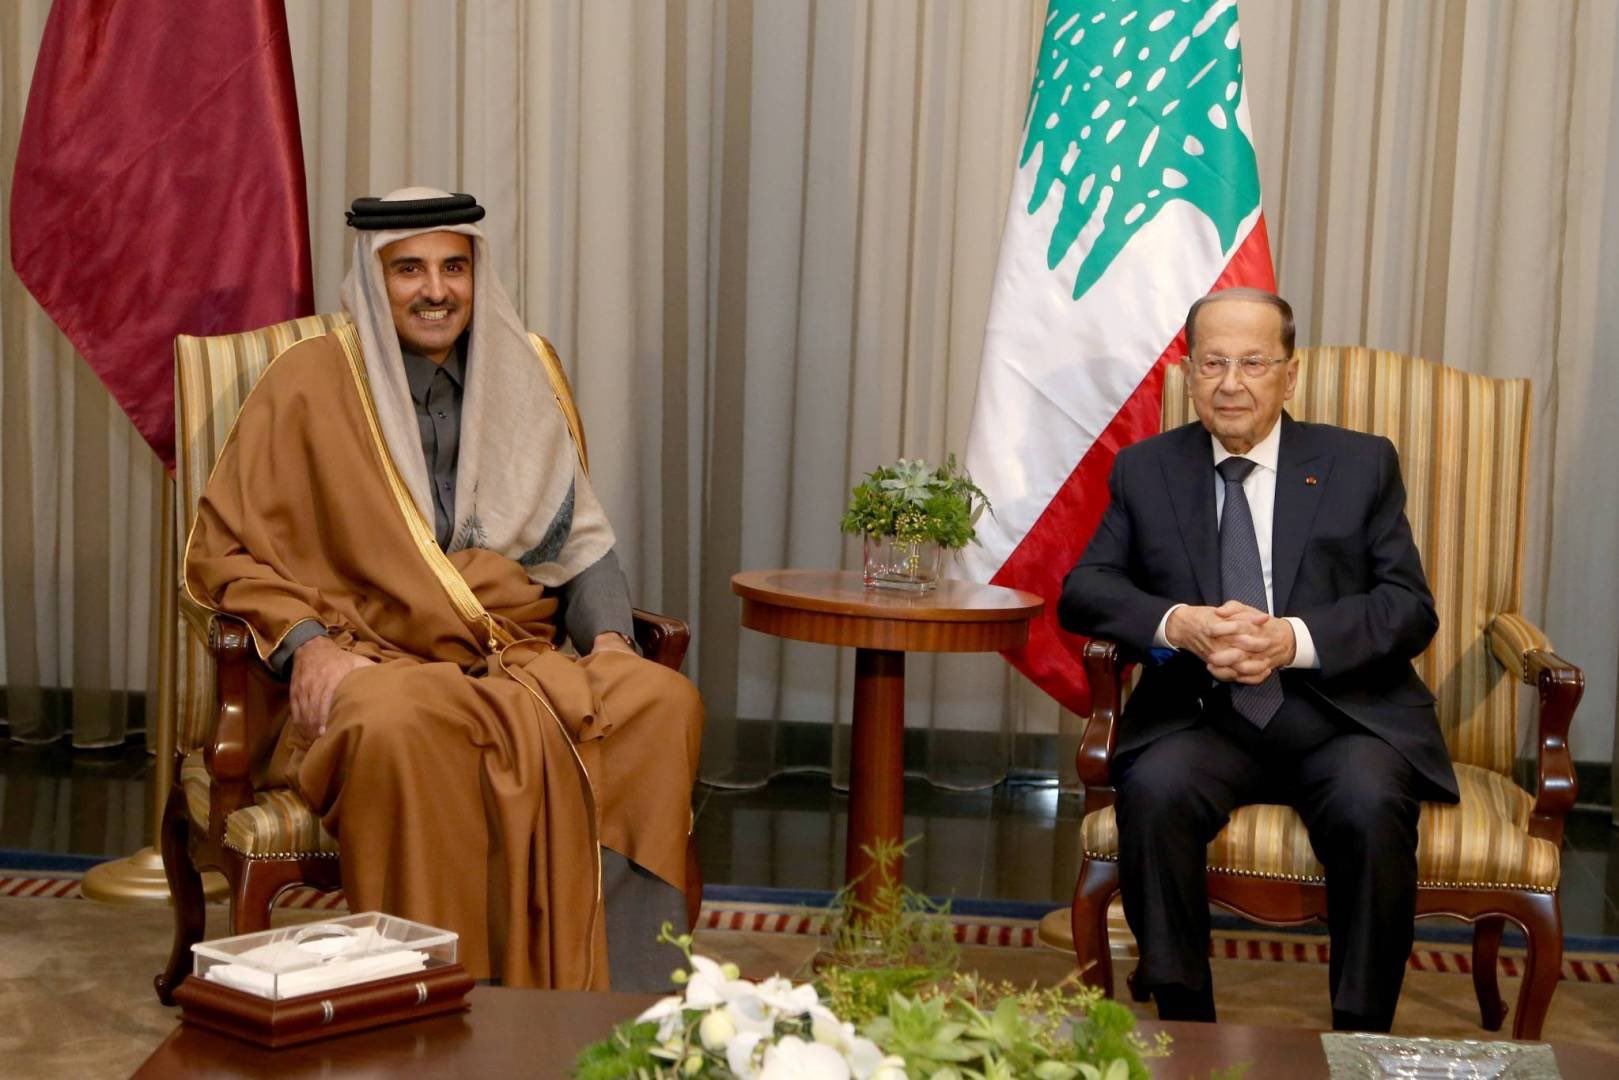 وسط الأزمة الخليجية - اللبنانية.. الرئيس اللبناني إلى قطر